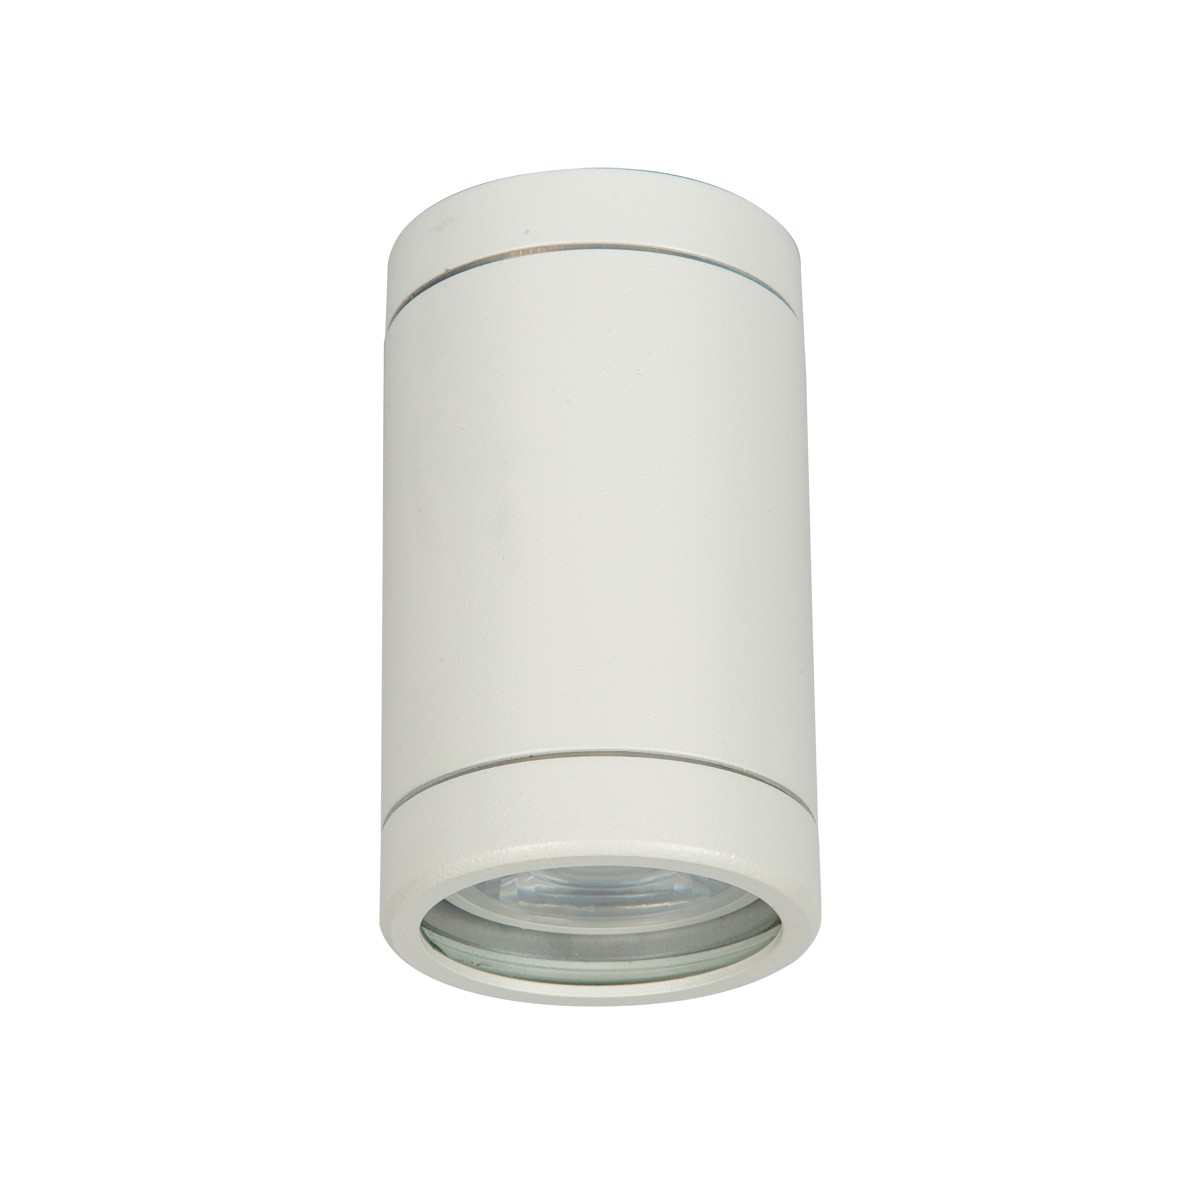 Φωτιστικό Αλουμινίου Οροφής IP54 GU10 D60mm Λευκό Χρώμα        VK/01061/W